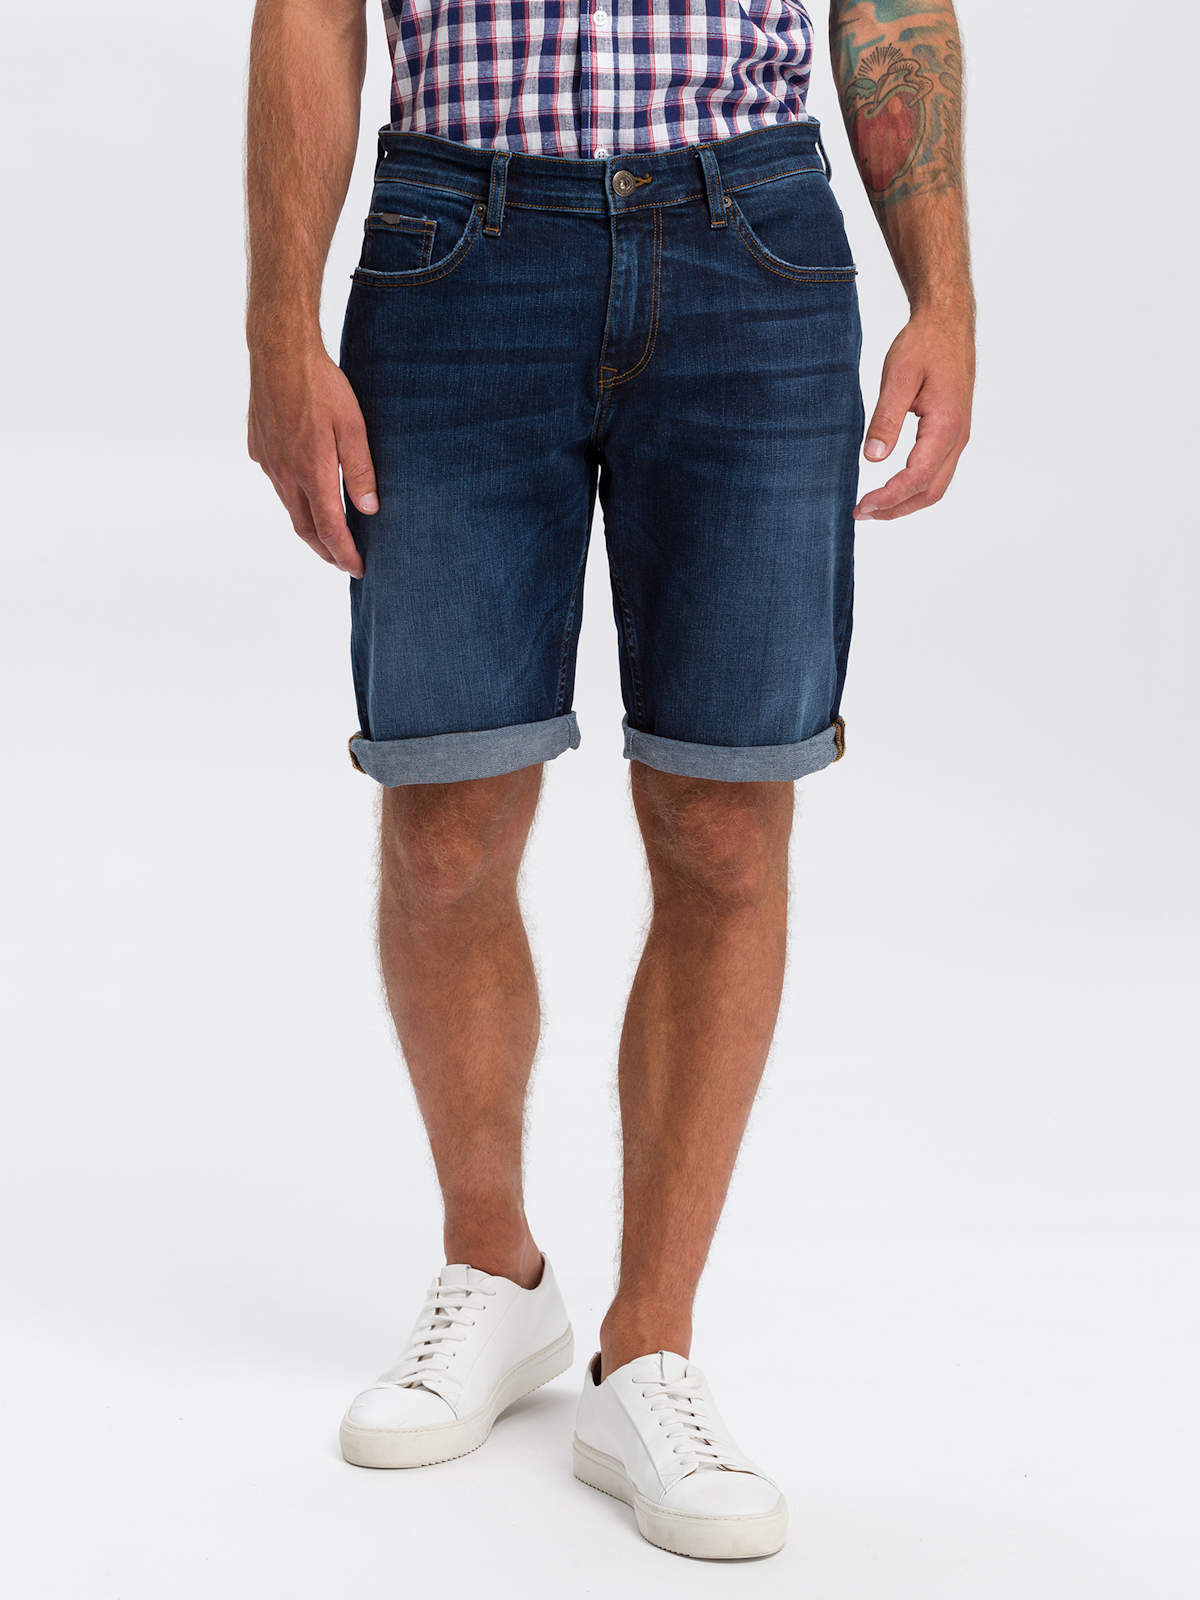 Джинсовые шорты мужские Cross Jeans A565-142 синие 27